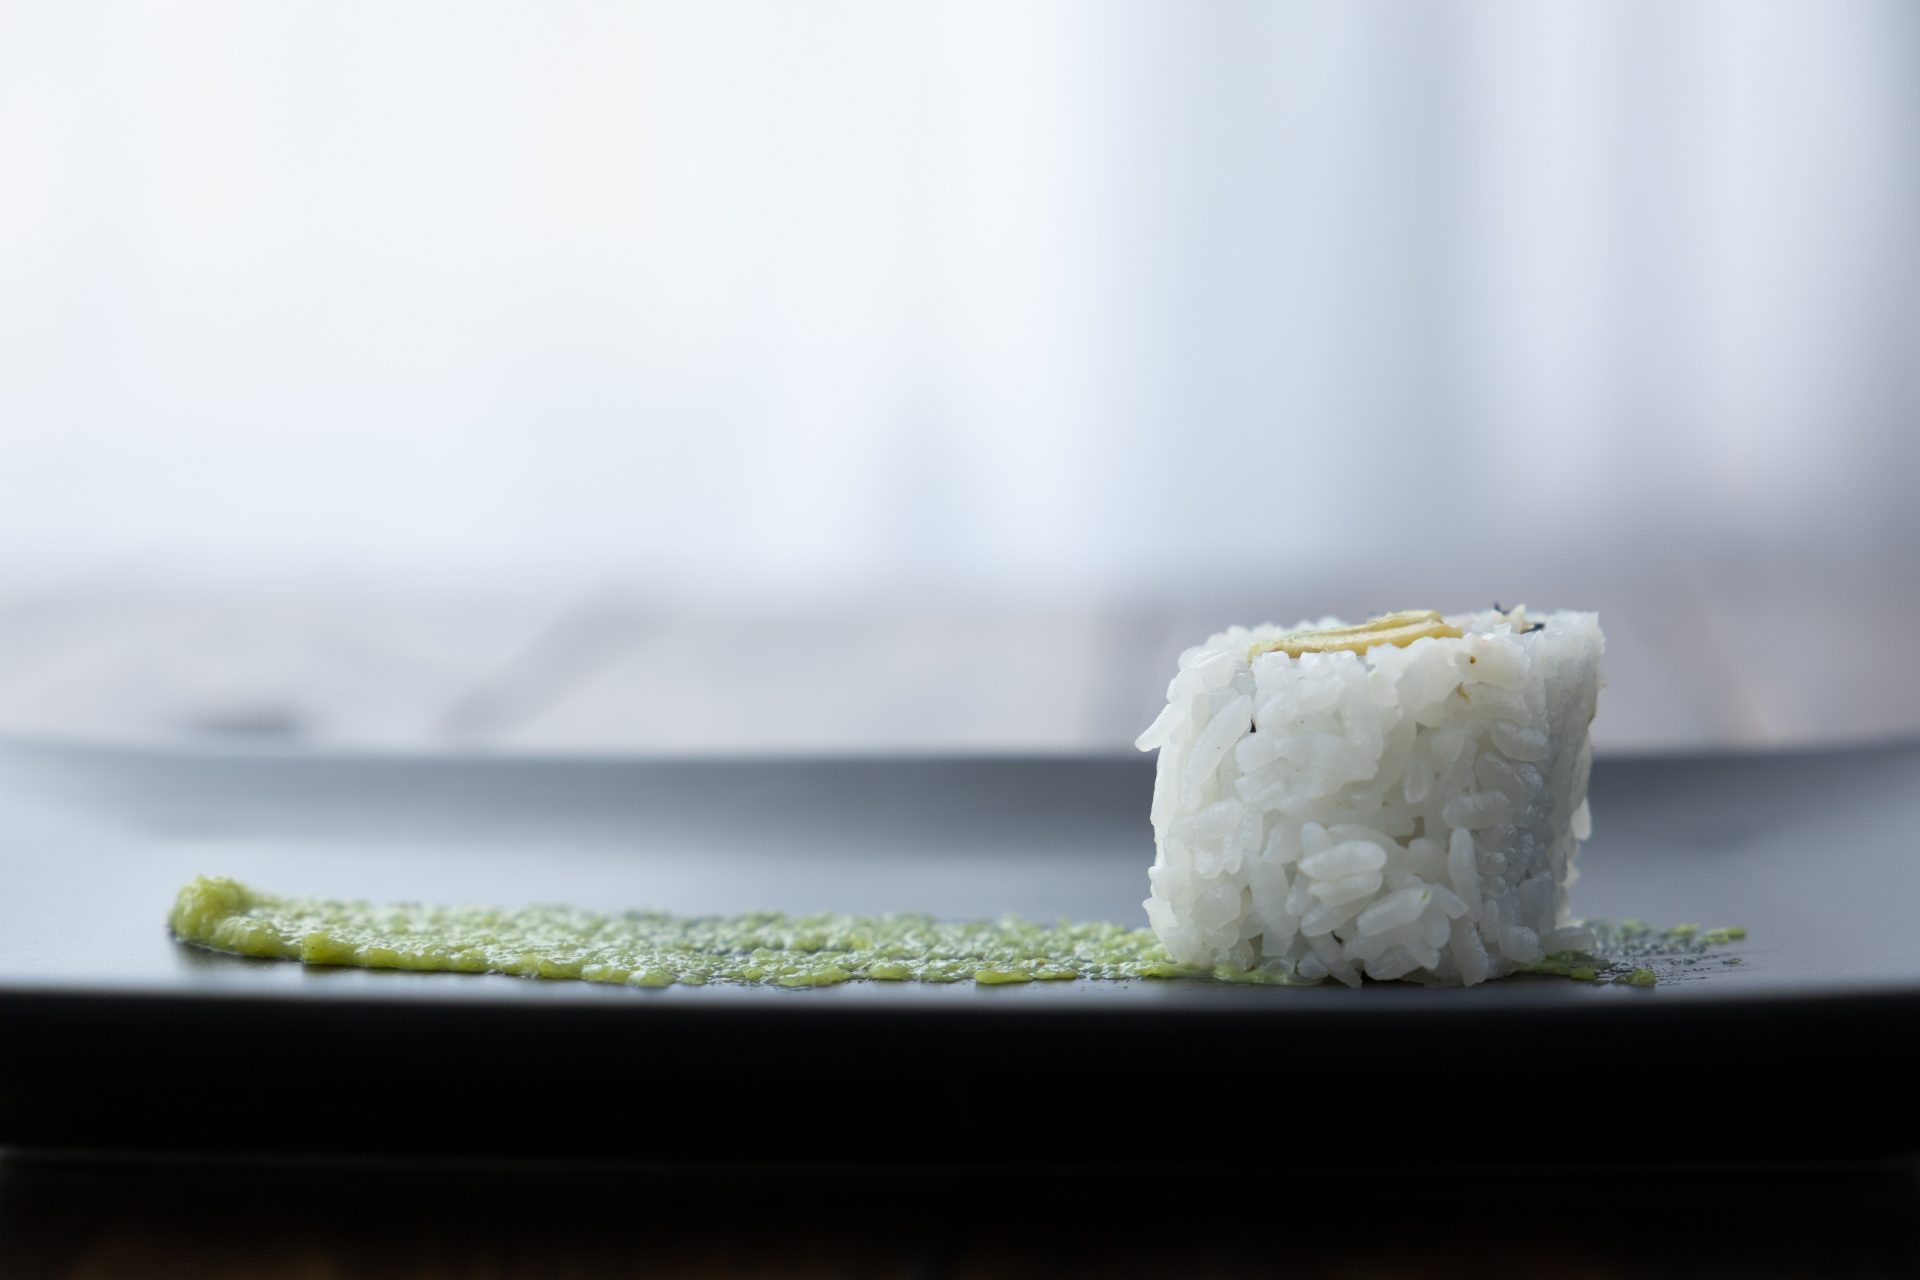 Le wasabi stimule la mémoire